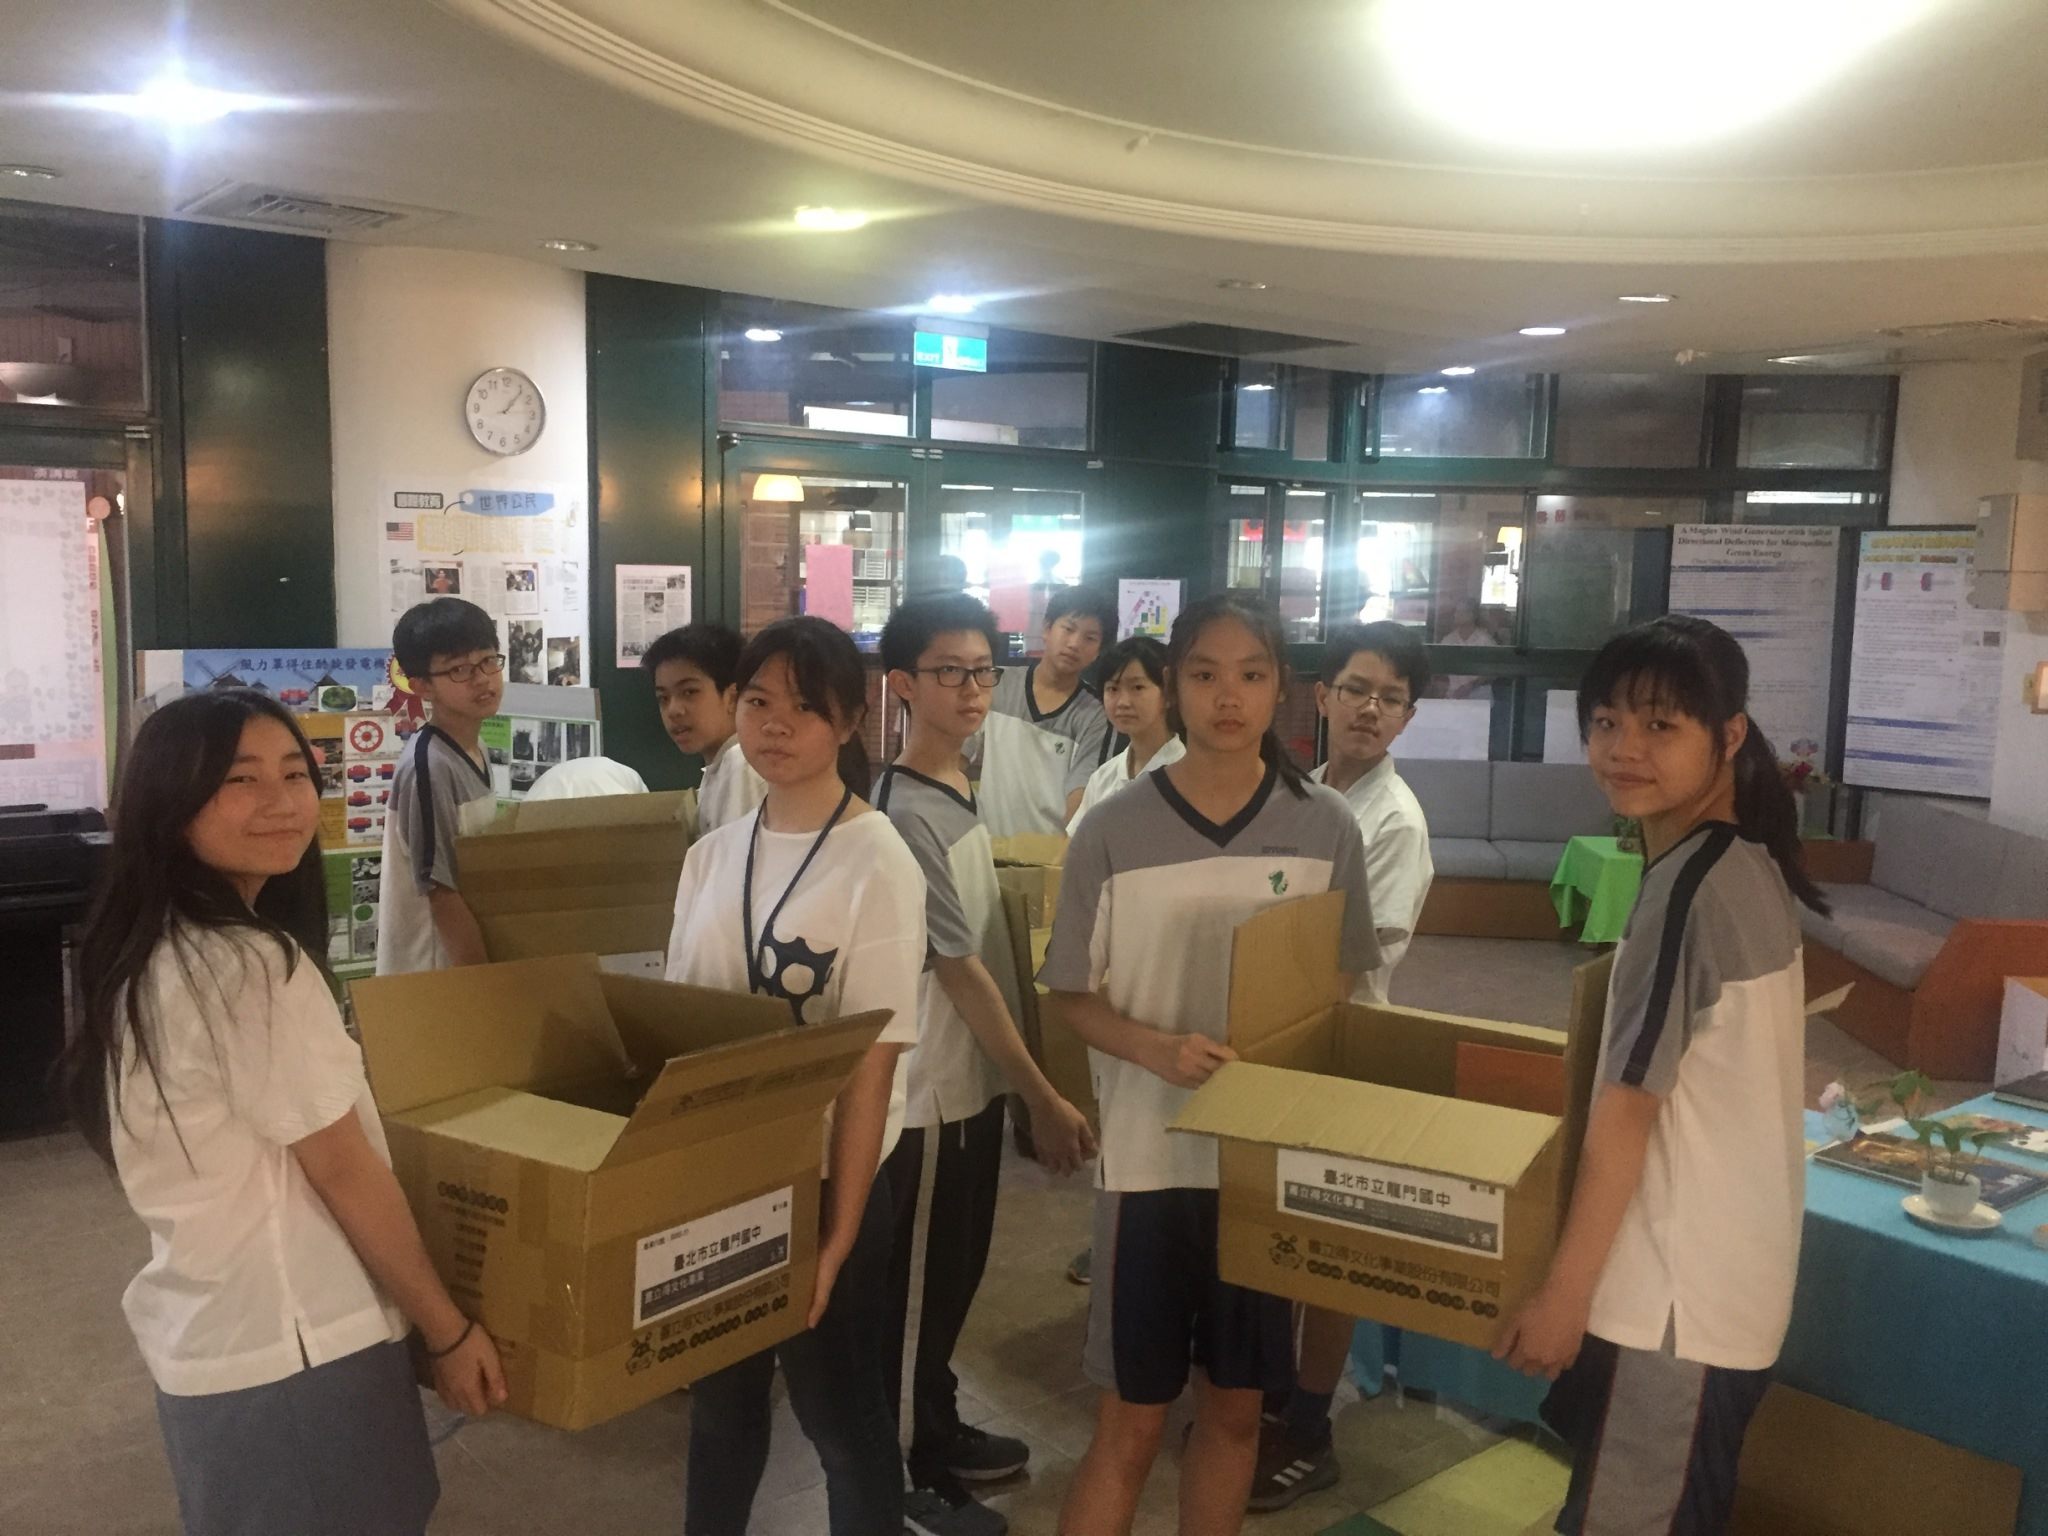 นักเรียนต่างช่วยกันแพคหนังสือใส่ลังเพื่อเตรียมส่งไปเมียนมา (ภาพจาก รัฐบาลกรุงไทเป)